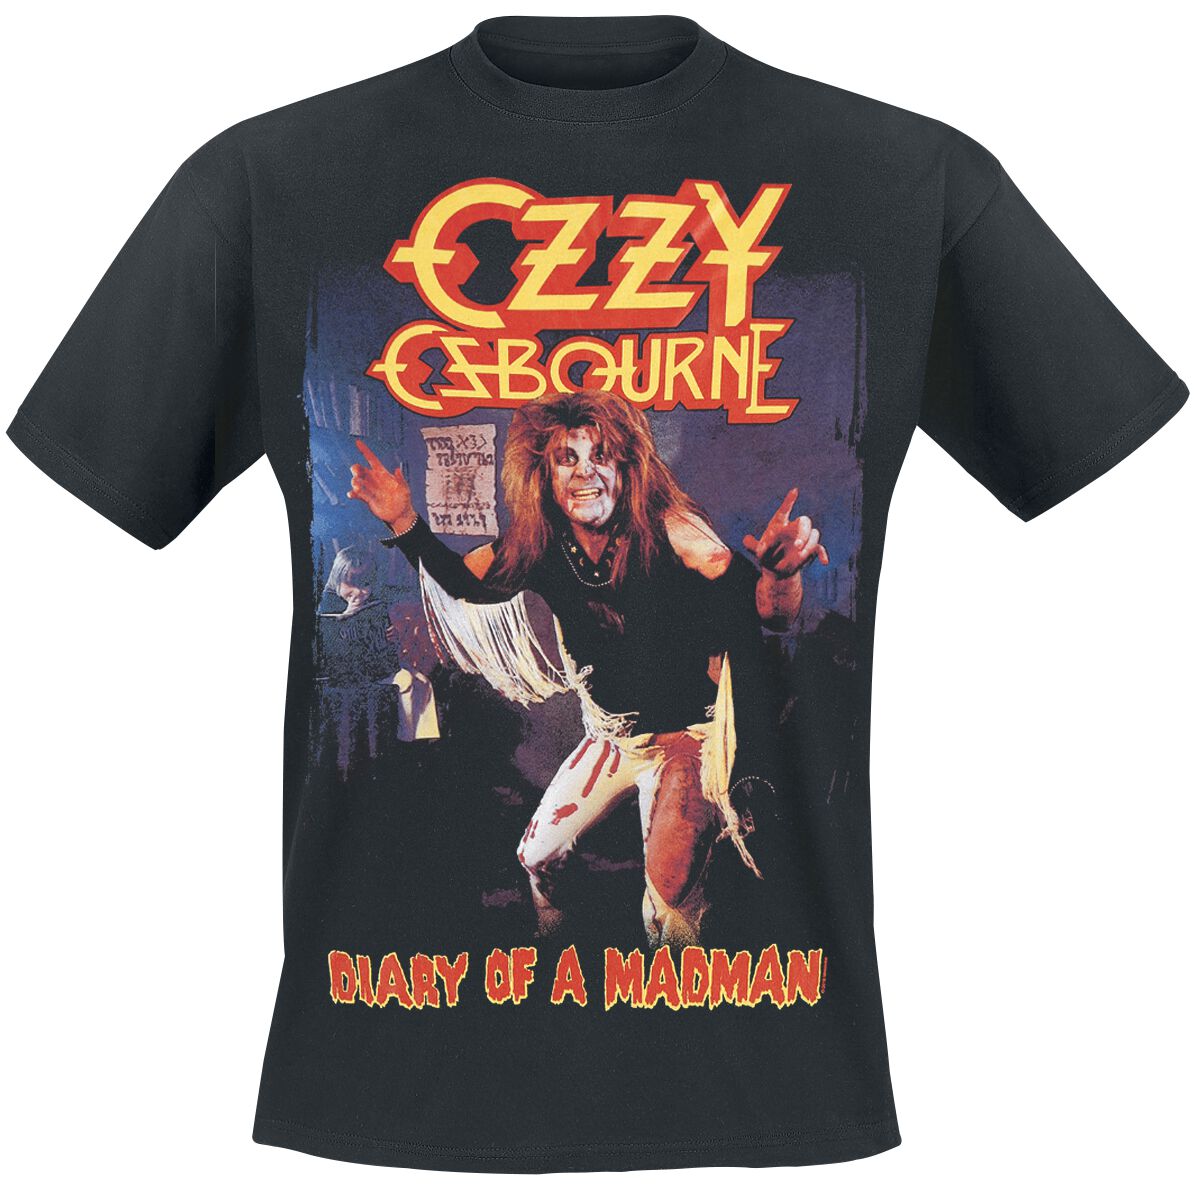 Image of Ozzy Osbourne Diary Of A Madman Album T-Shirt schwarz